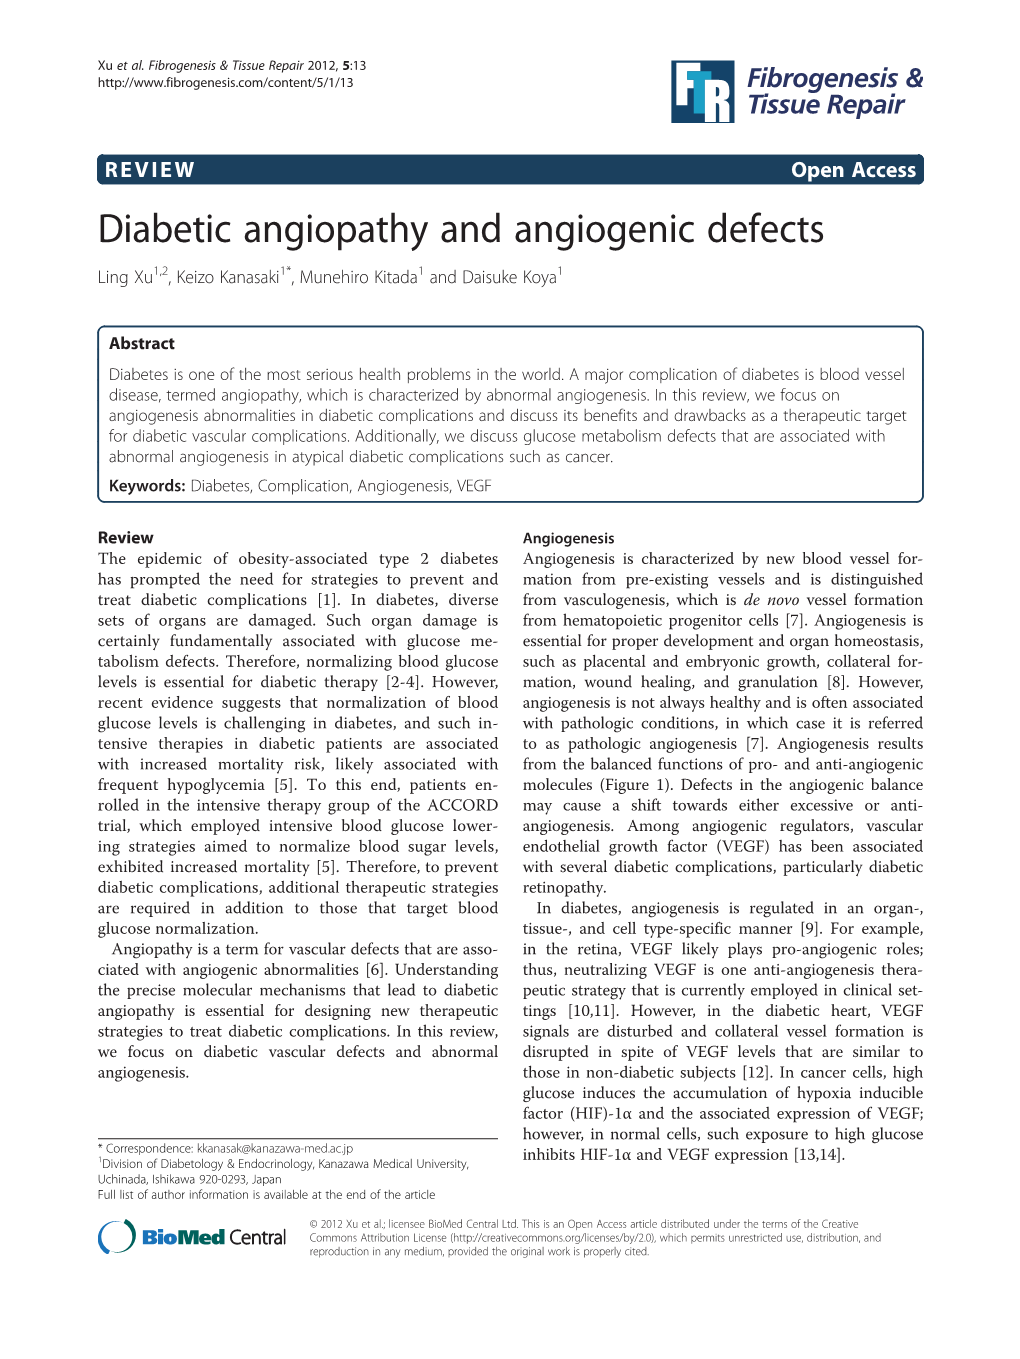 Diabetic Angiopathy and Angiogenic Defects Ling Xu1,2, Keizo Kanasaki1*, Munehiro Kitada1 and Daisuke Koya1